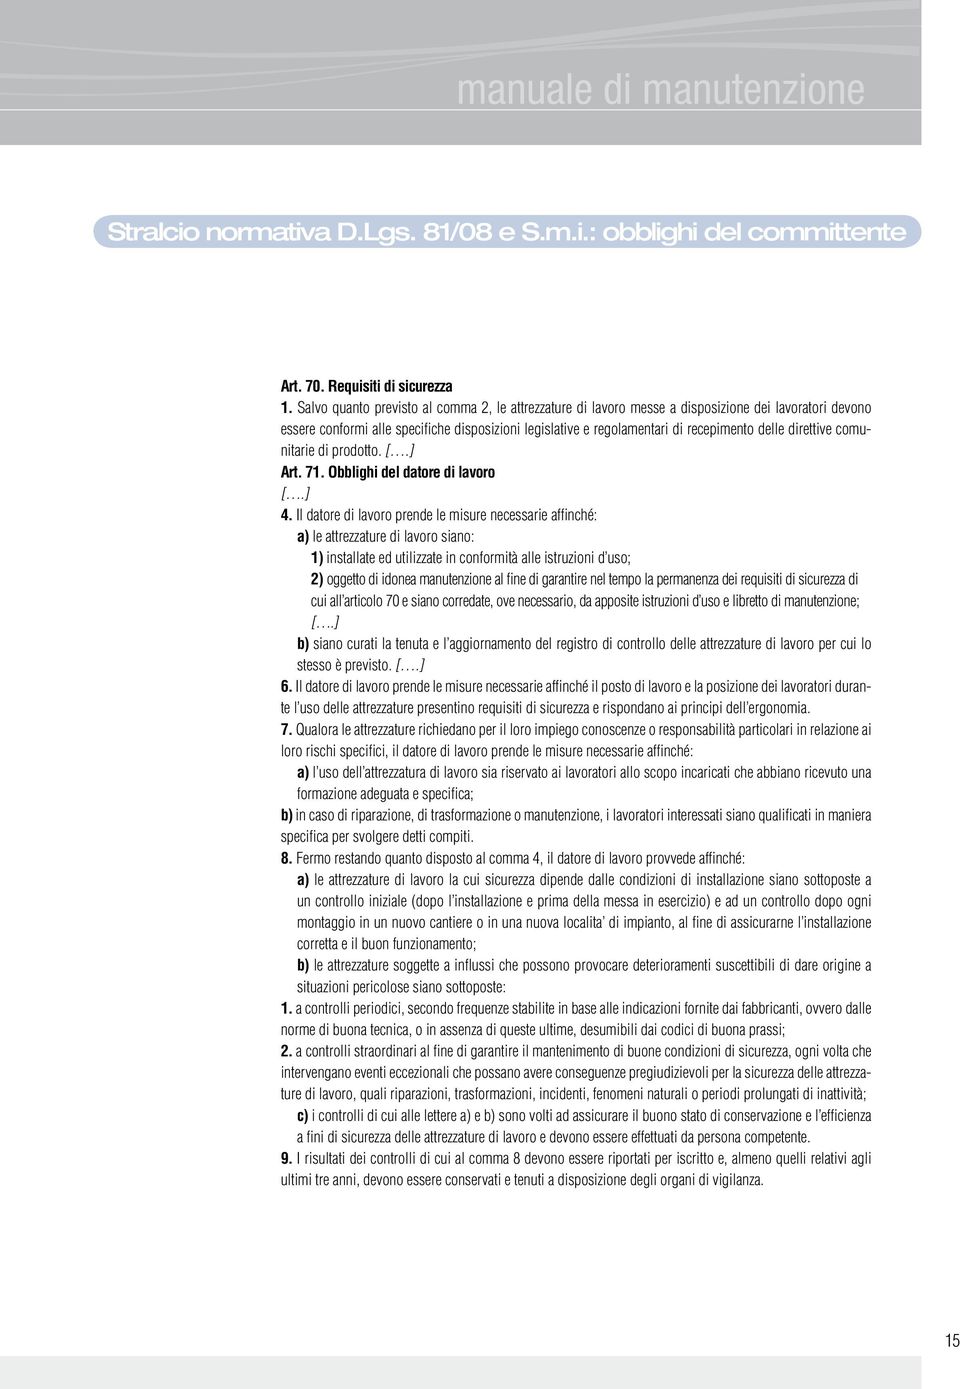 direttive comunitarie di prodotto. [.] Art. 71. Obblighi del datore di lavoro [.] 4.